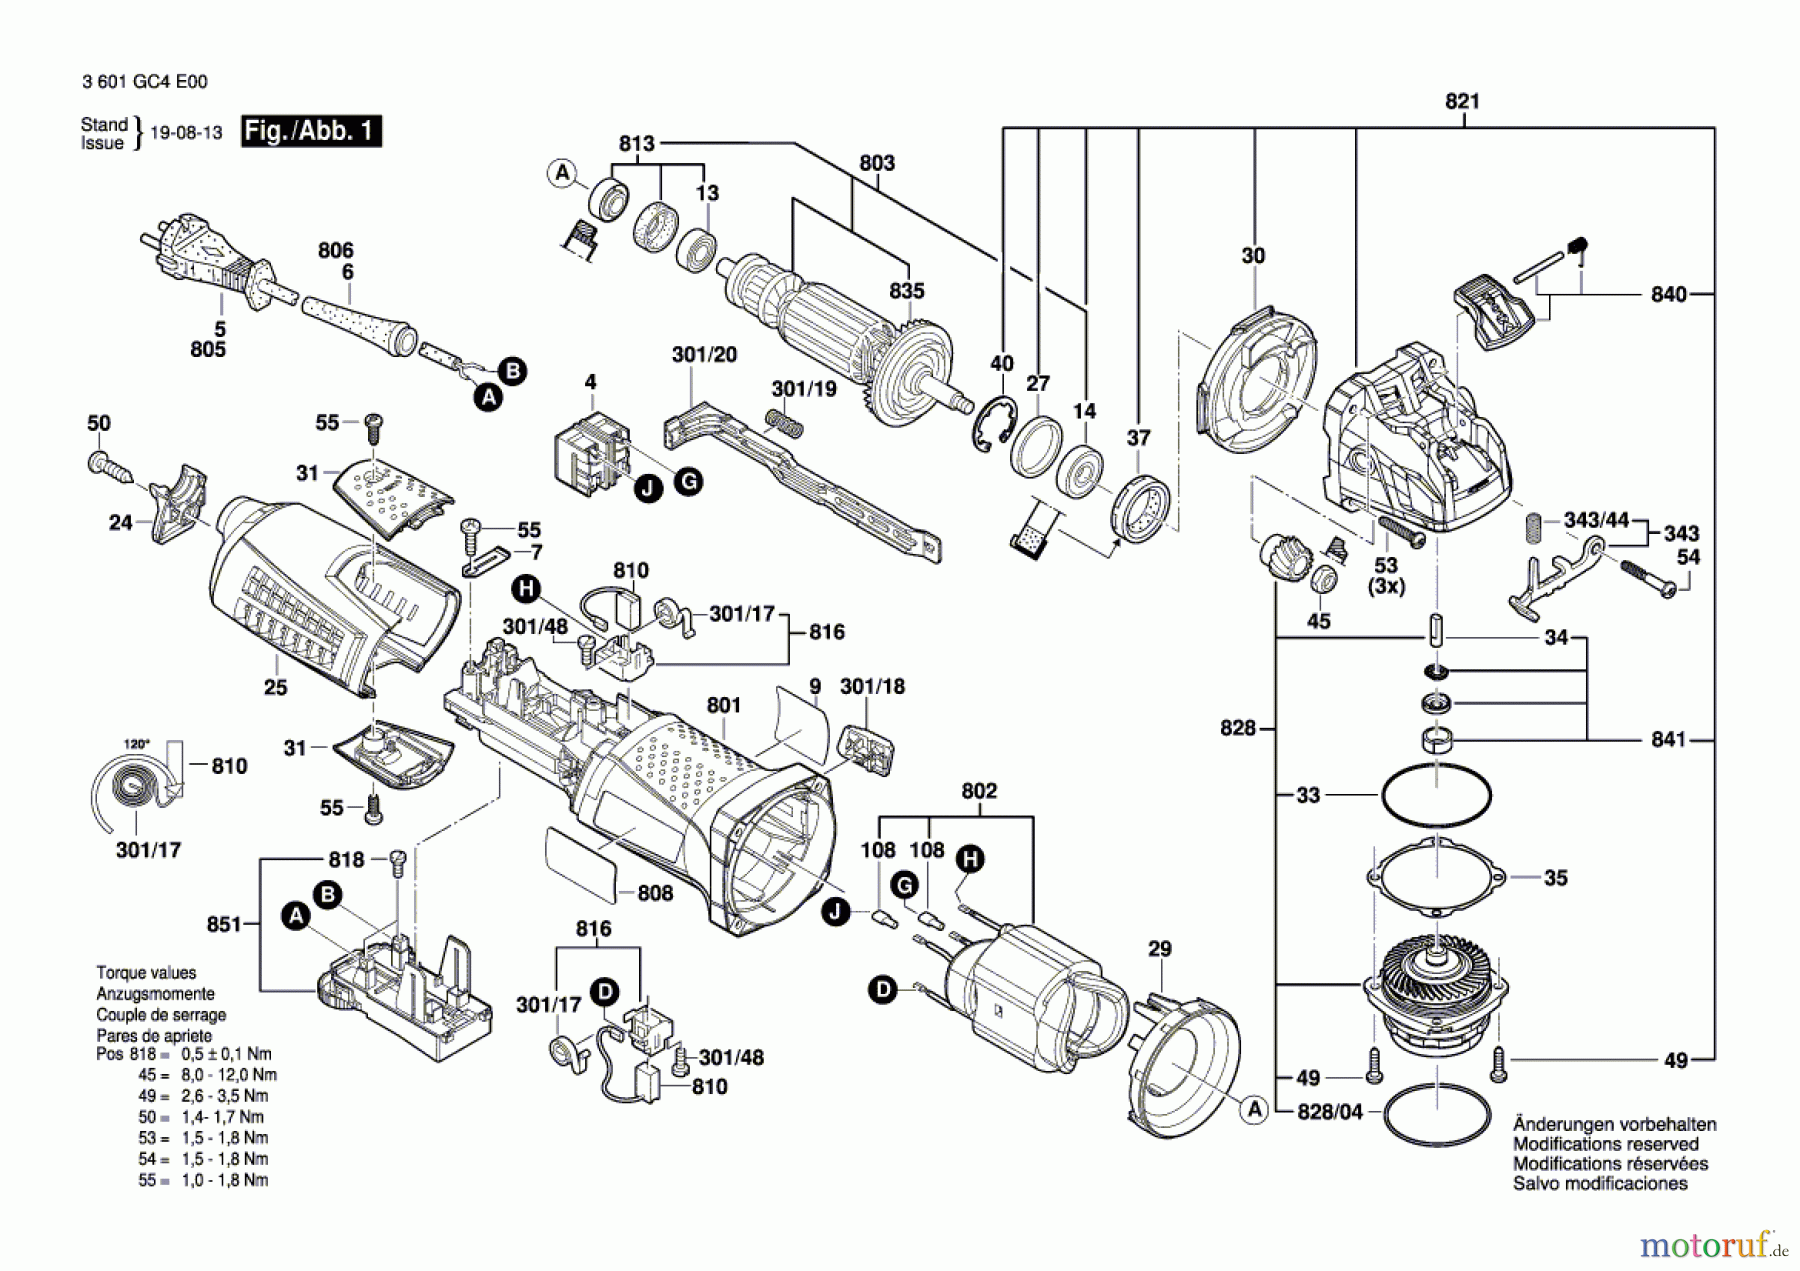  Bosch Werkzeug Winkelschleifer BAGX 125 Seite 1